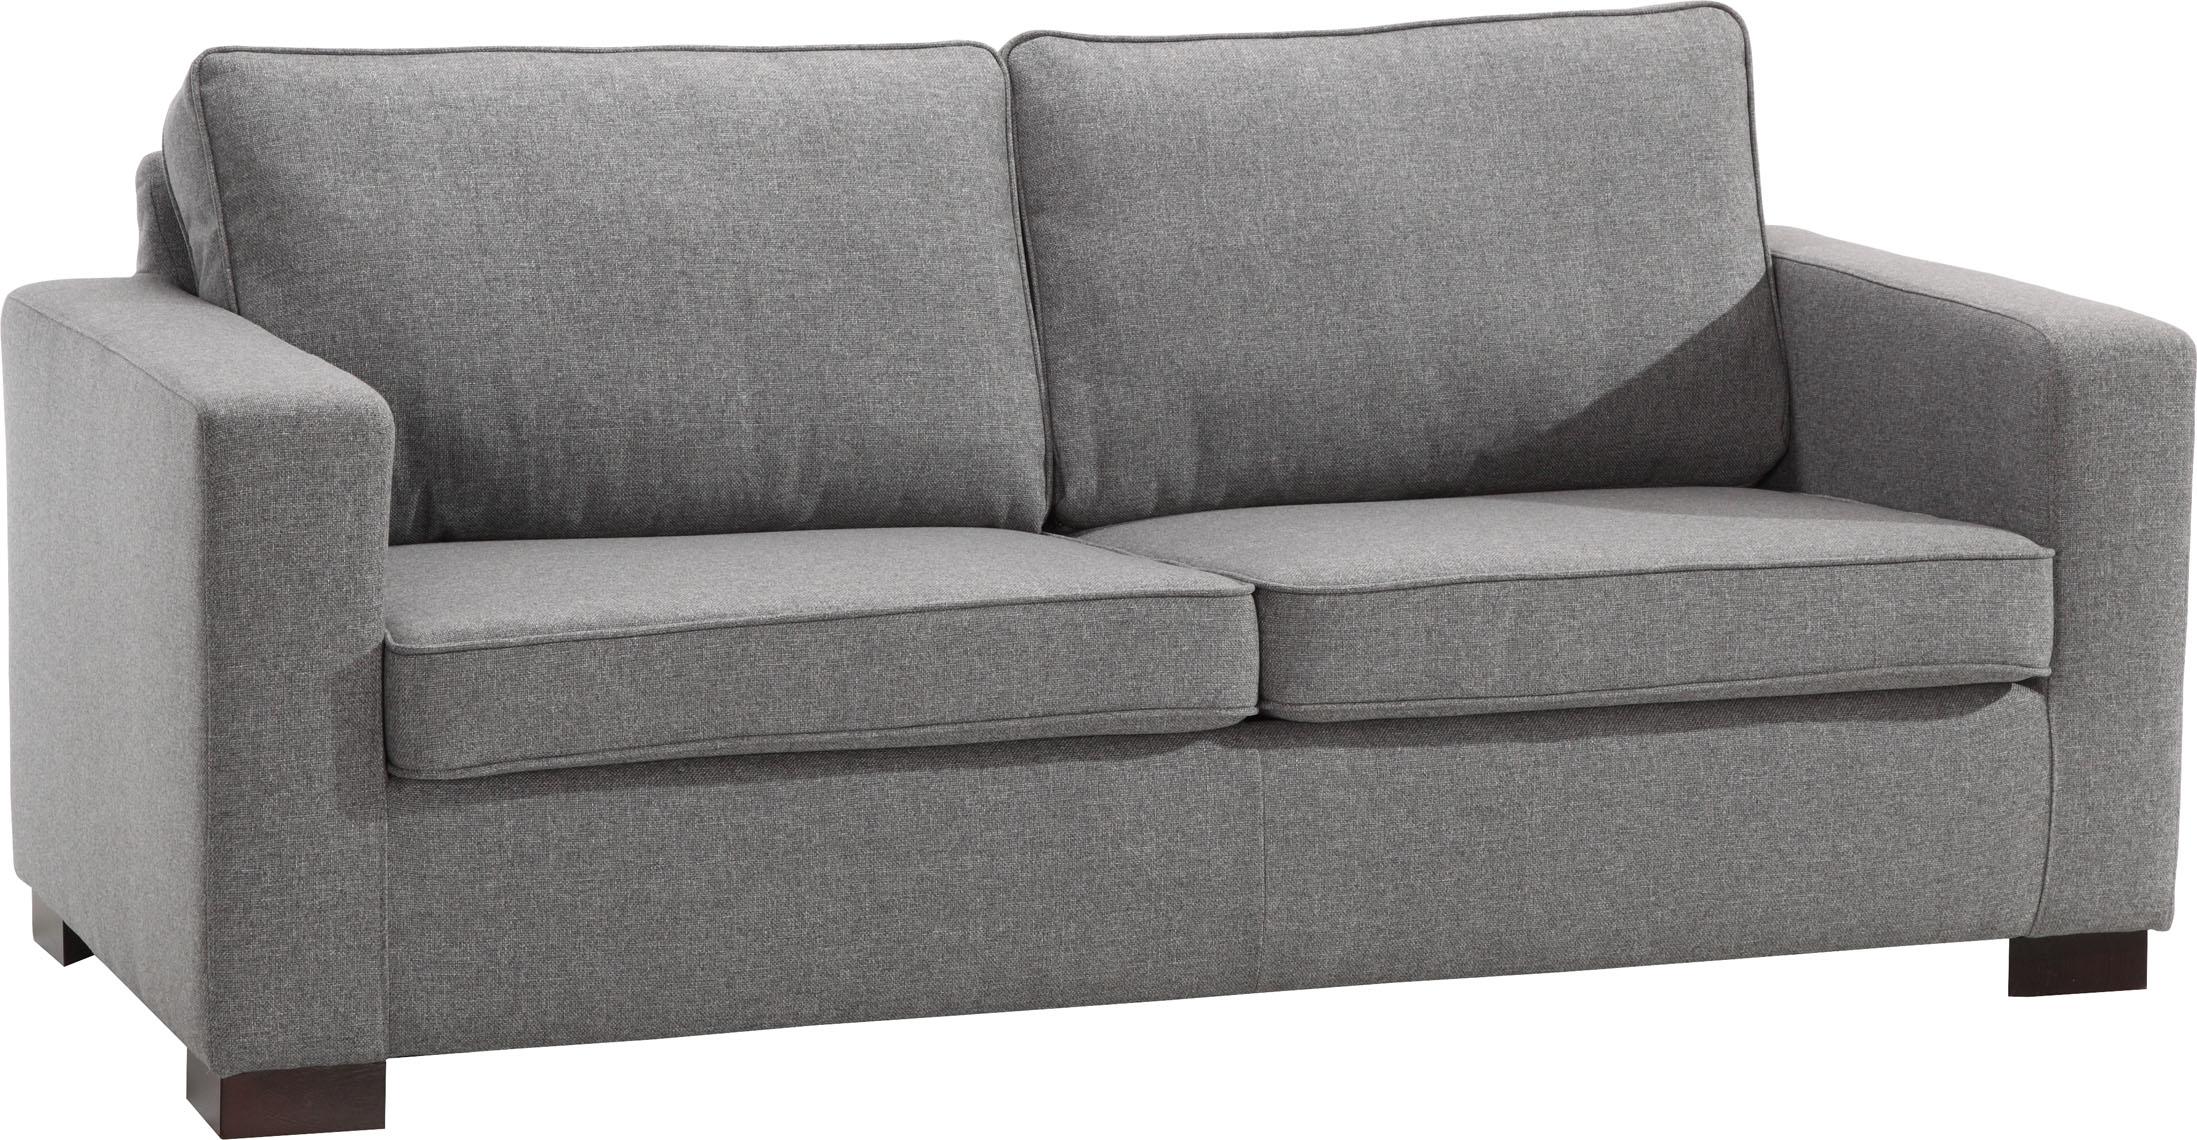 2-seat sofa Noel